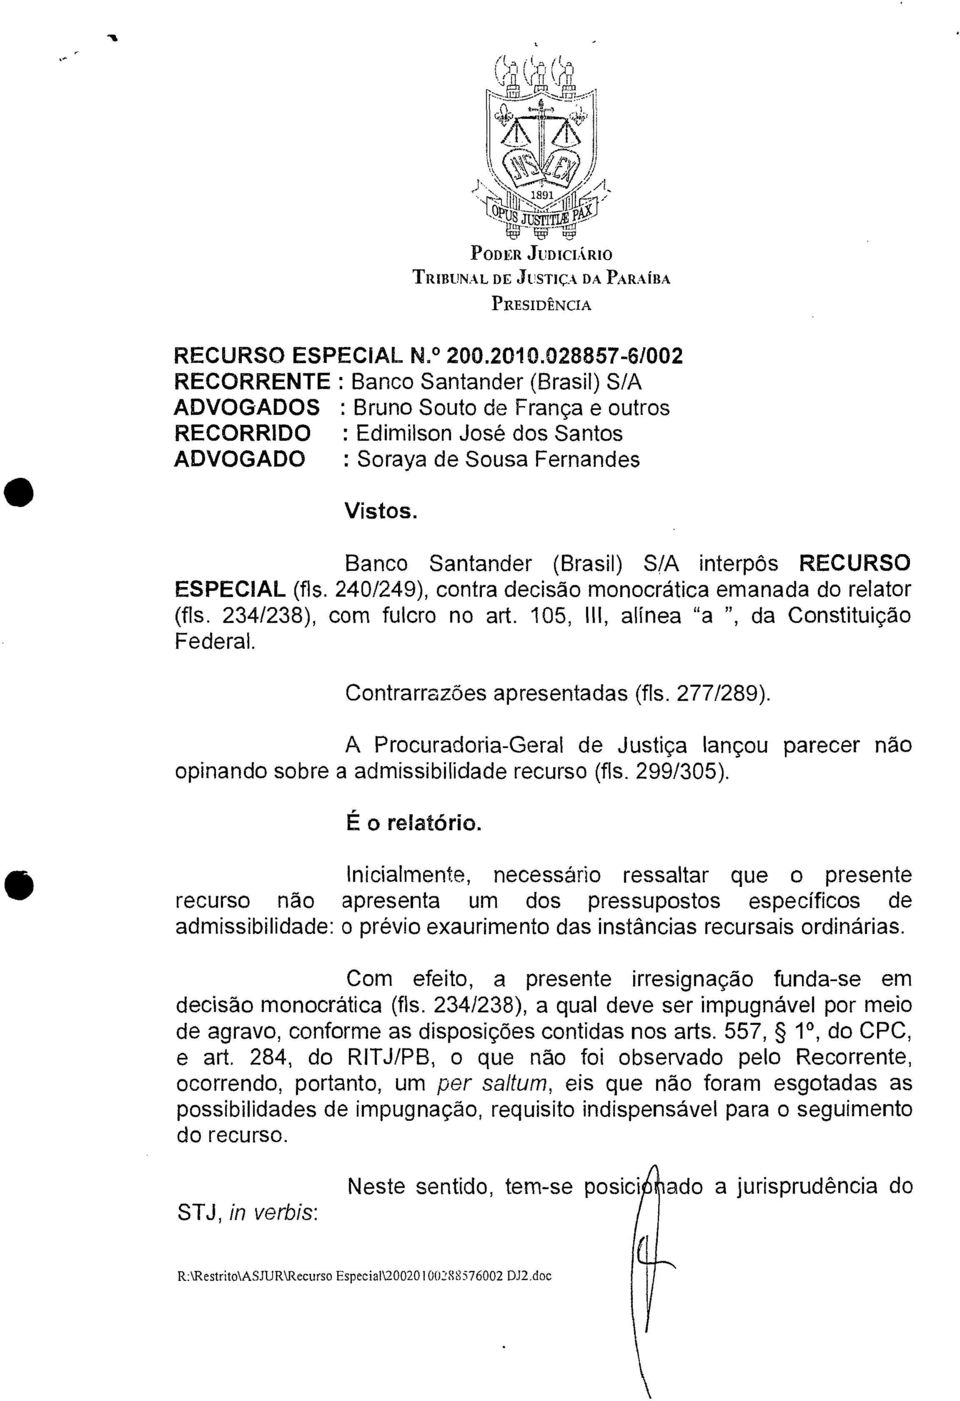 Banco Santander (Brasil) S/A interpôs RECURSO ESPECIAL (fls. 240/249), contra decisão monocrática emanada do relator (fls. 234/238), com fulcro no art. 105, III, alínea "a ", da Constituição Federal.